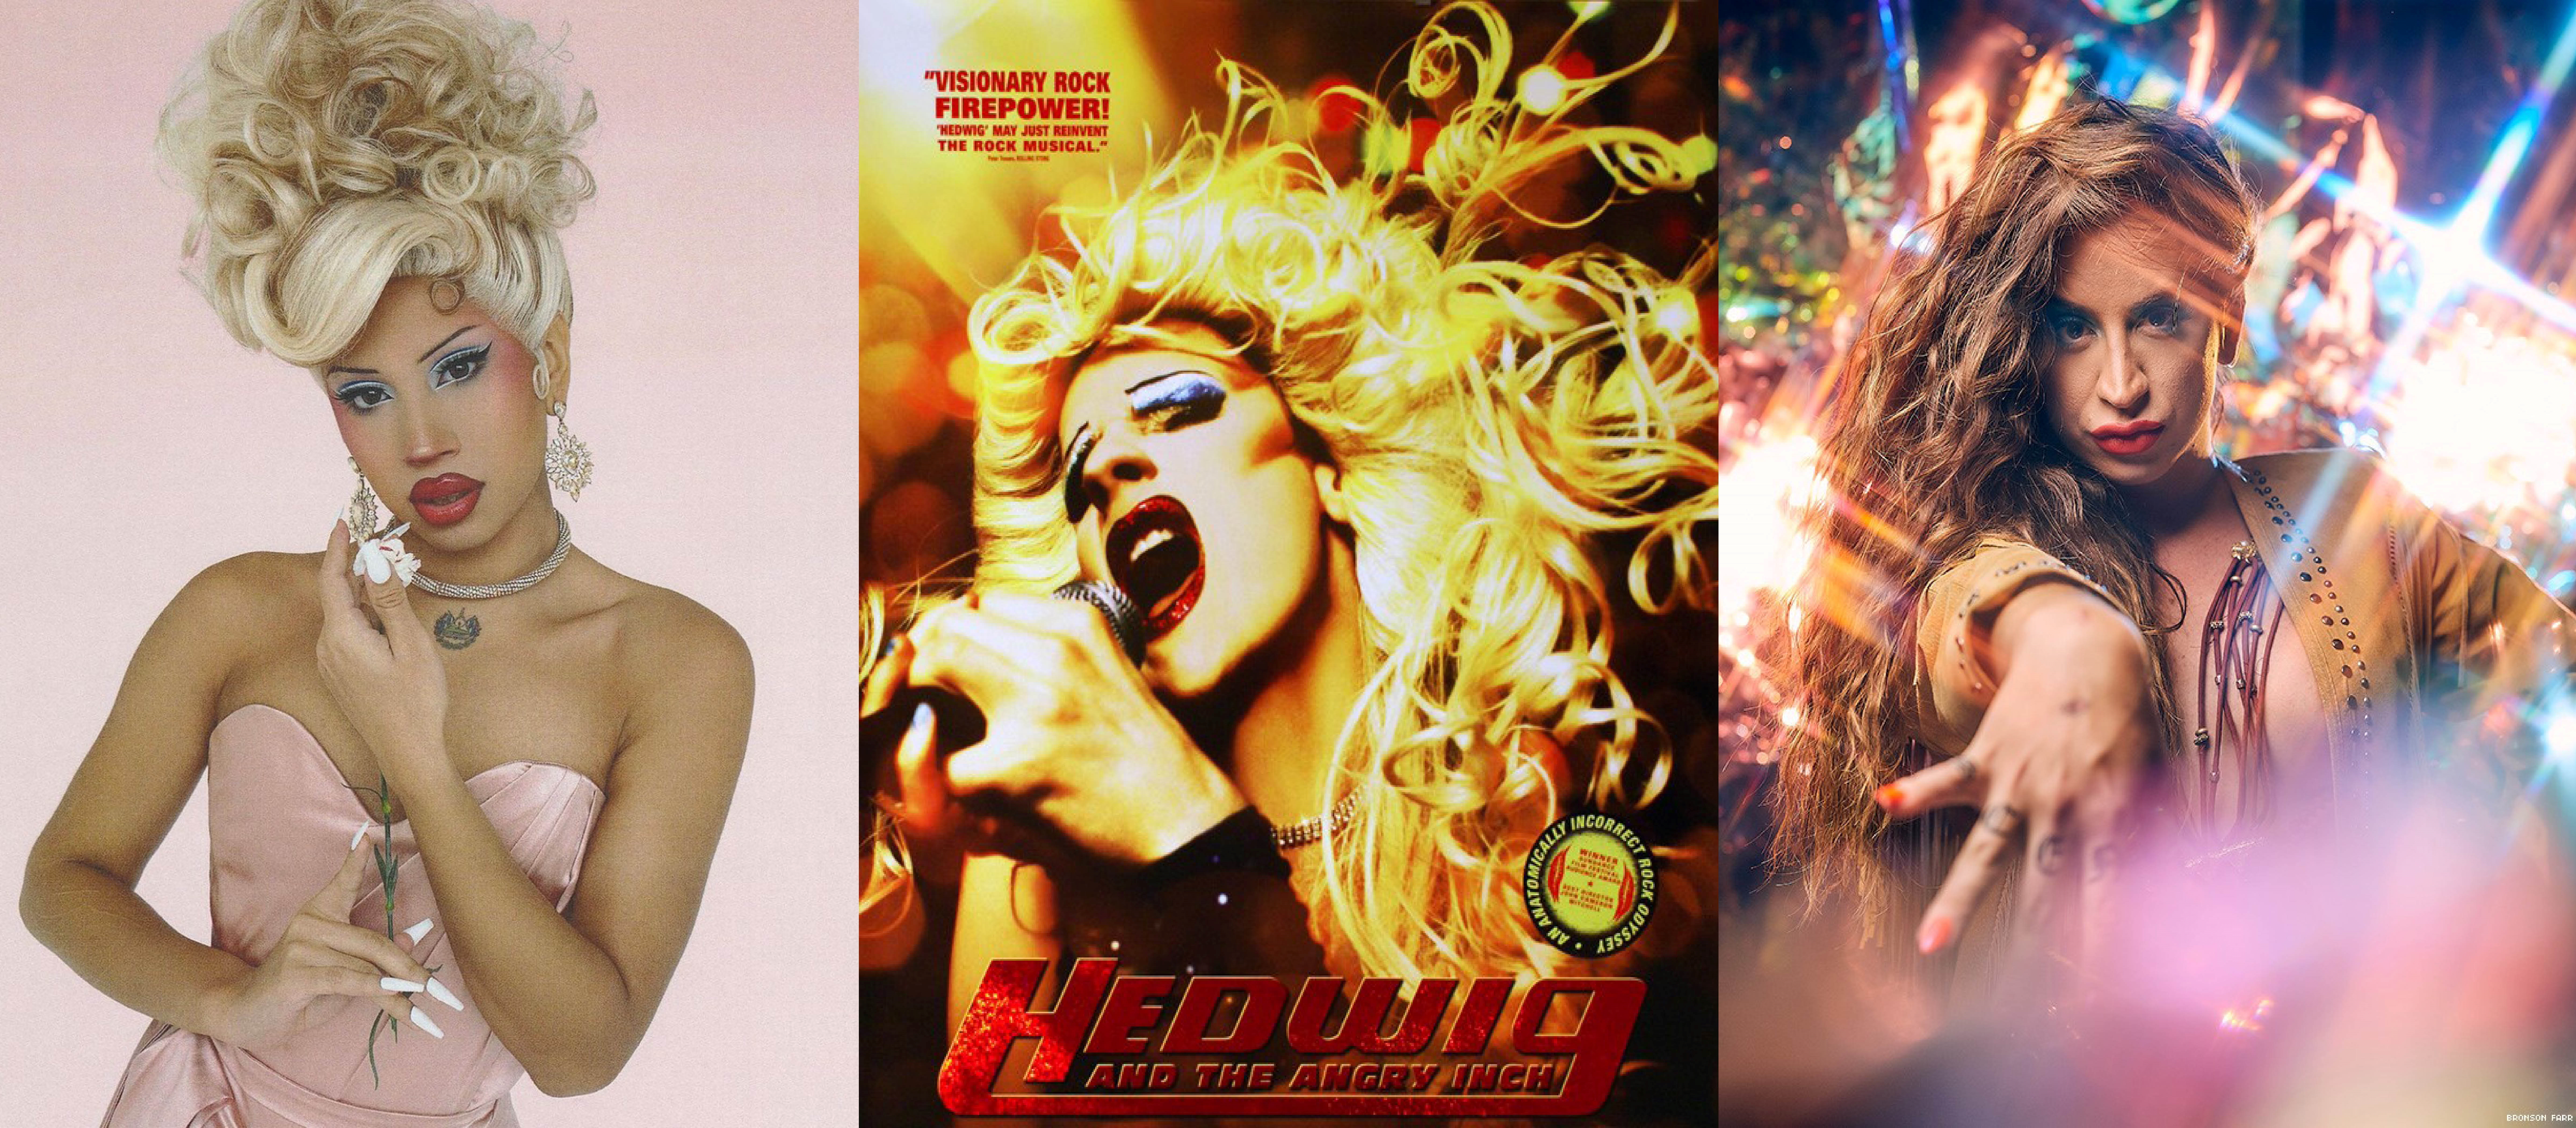 Três imagens da esquerda para a direita: Chiquitita, Hedwig and the Angry Inch poster, Charlene Incarnate